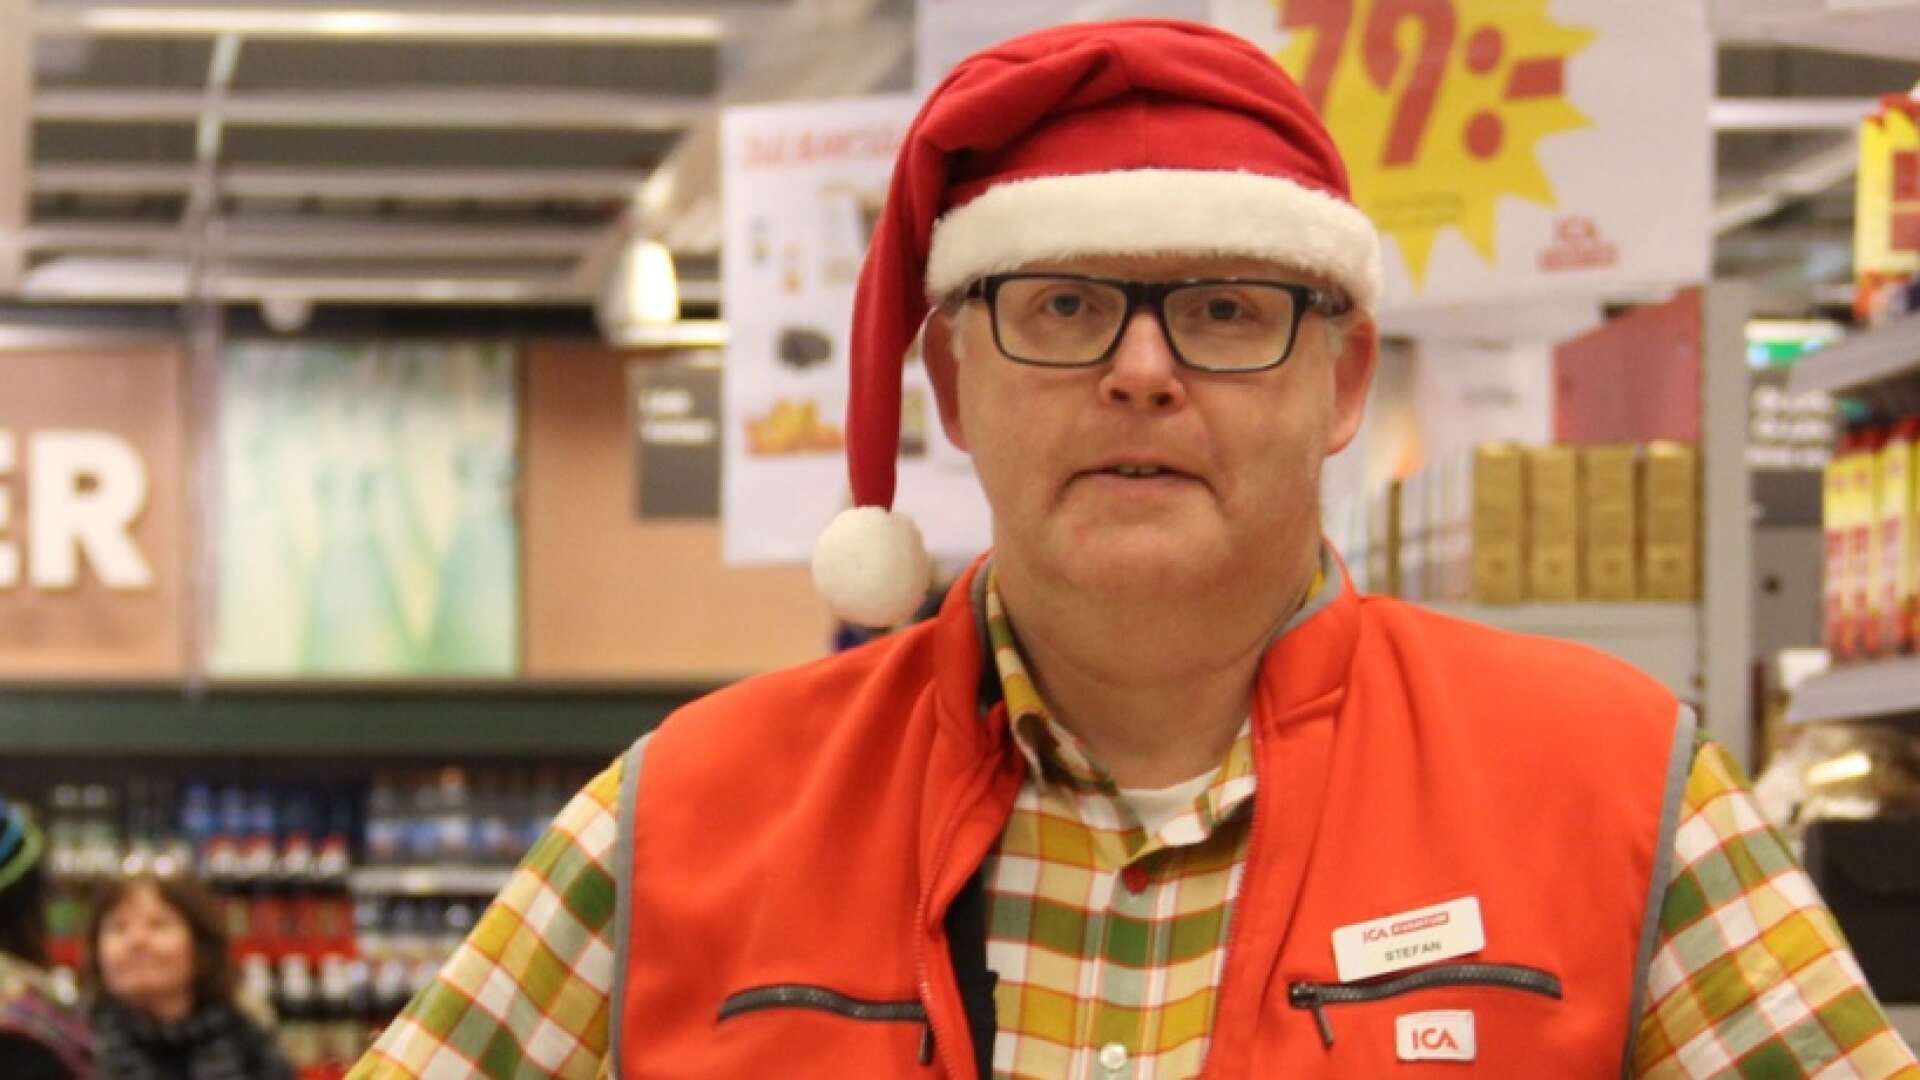 Ica Kvantums egen tomtefar Stefan Källvik kan nu bekräfta att det kommer att bli en vanlig julfest i butiken i år.